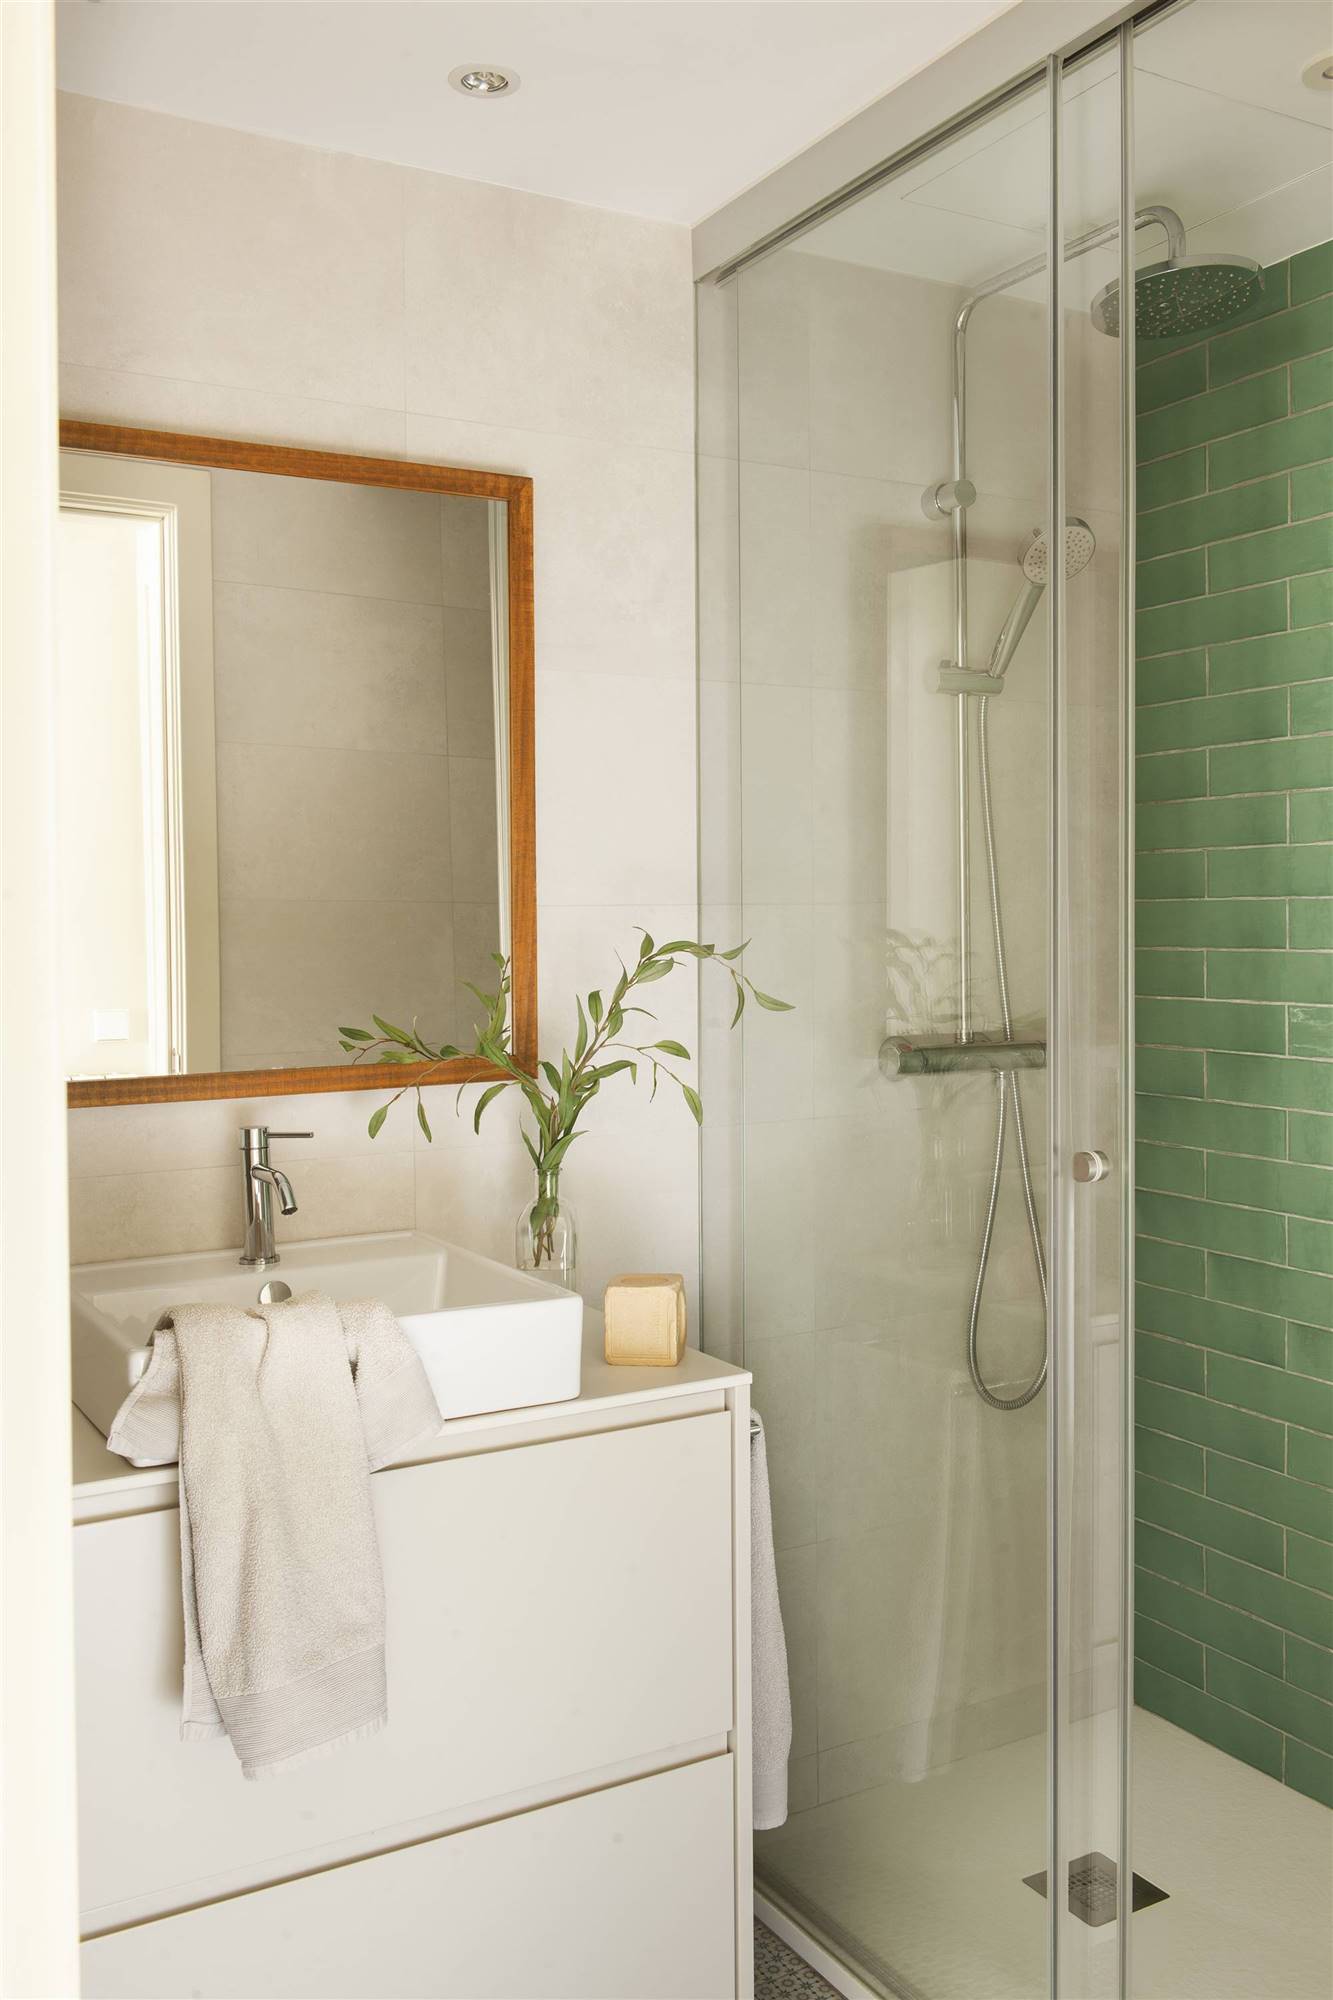 Baño pequeño moderno en blanco con la pared de la ducha de azulejos verdes. 